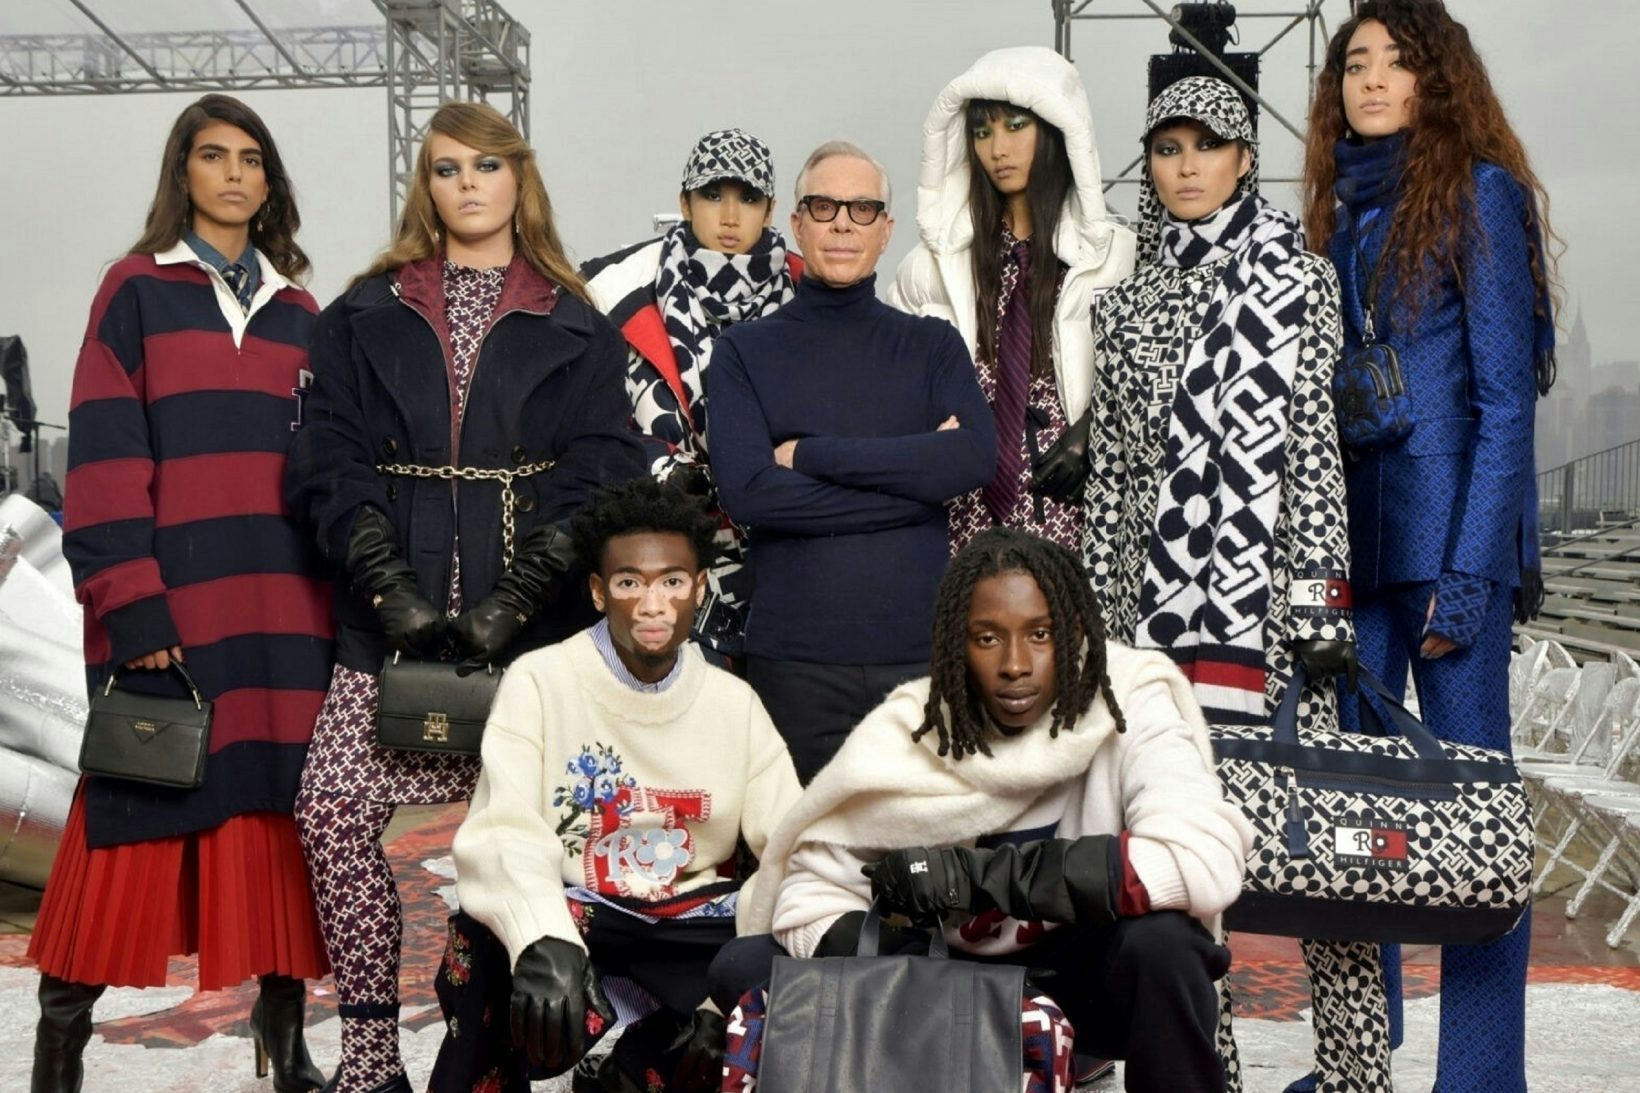 La New York Fashion Week a célébré la mode dans la rue